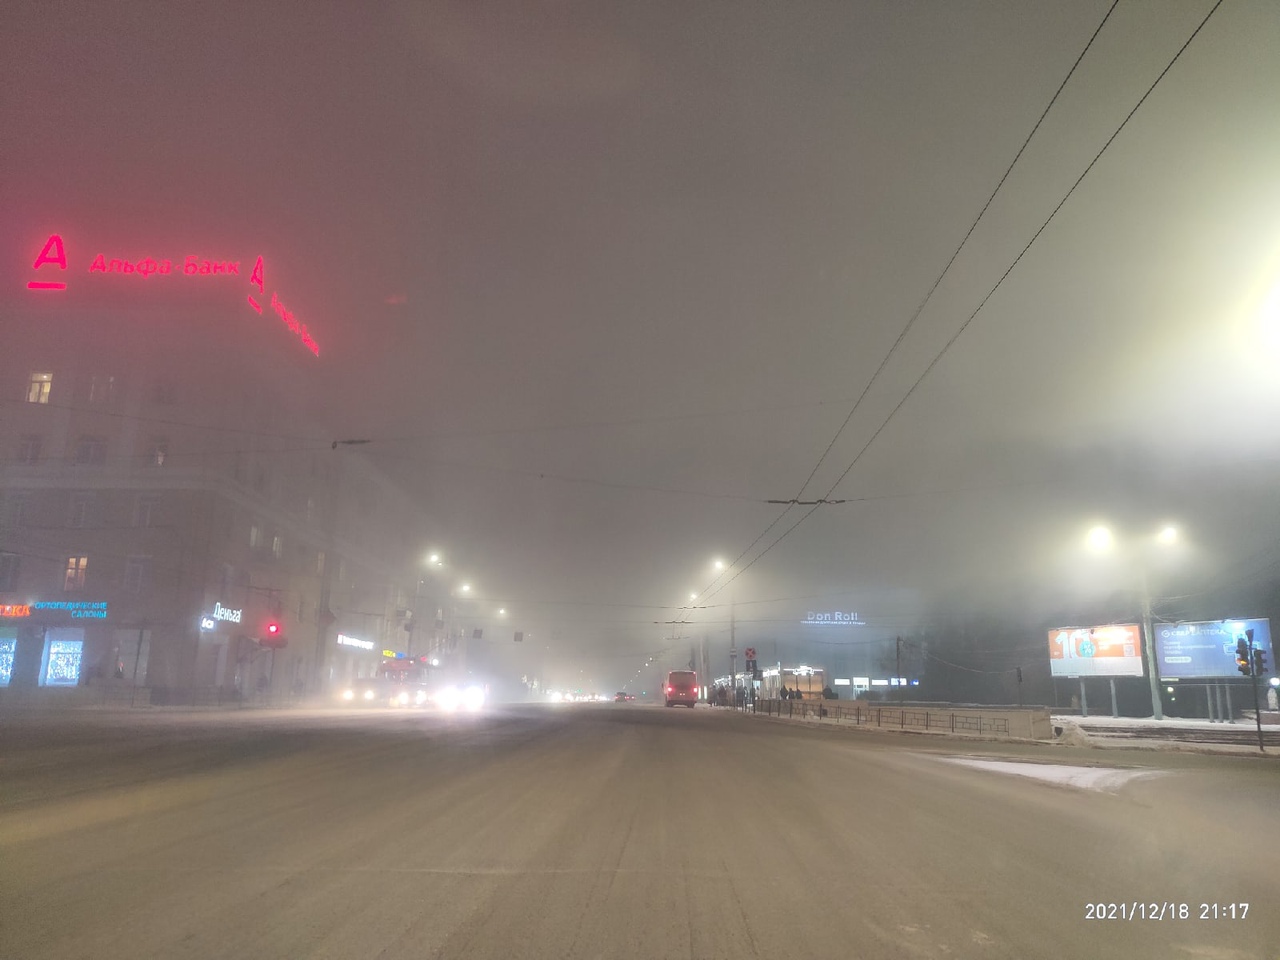 Почему Омск каждую зиму задыхается от смога? #Новости #Общество #Омск